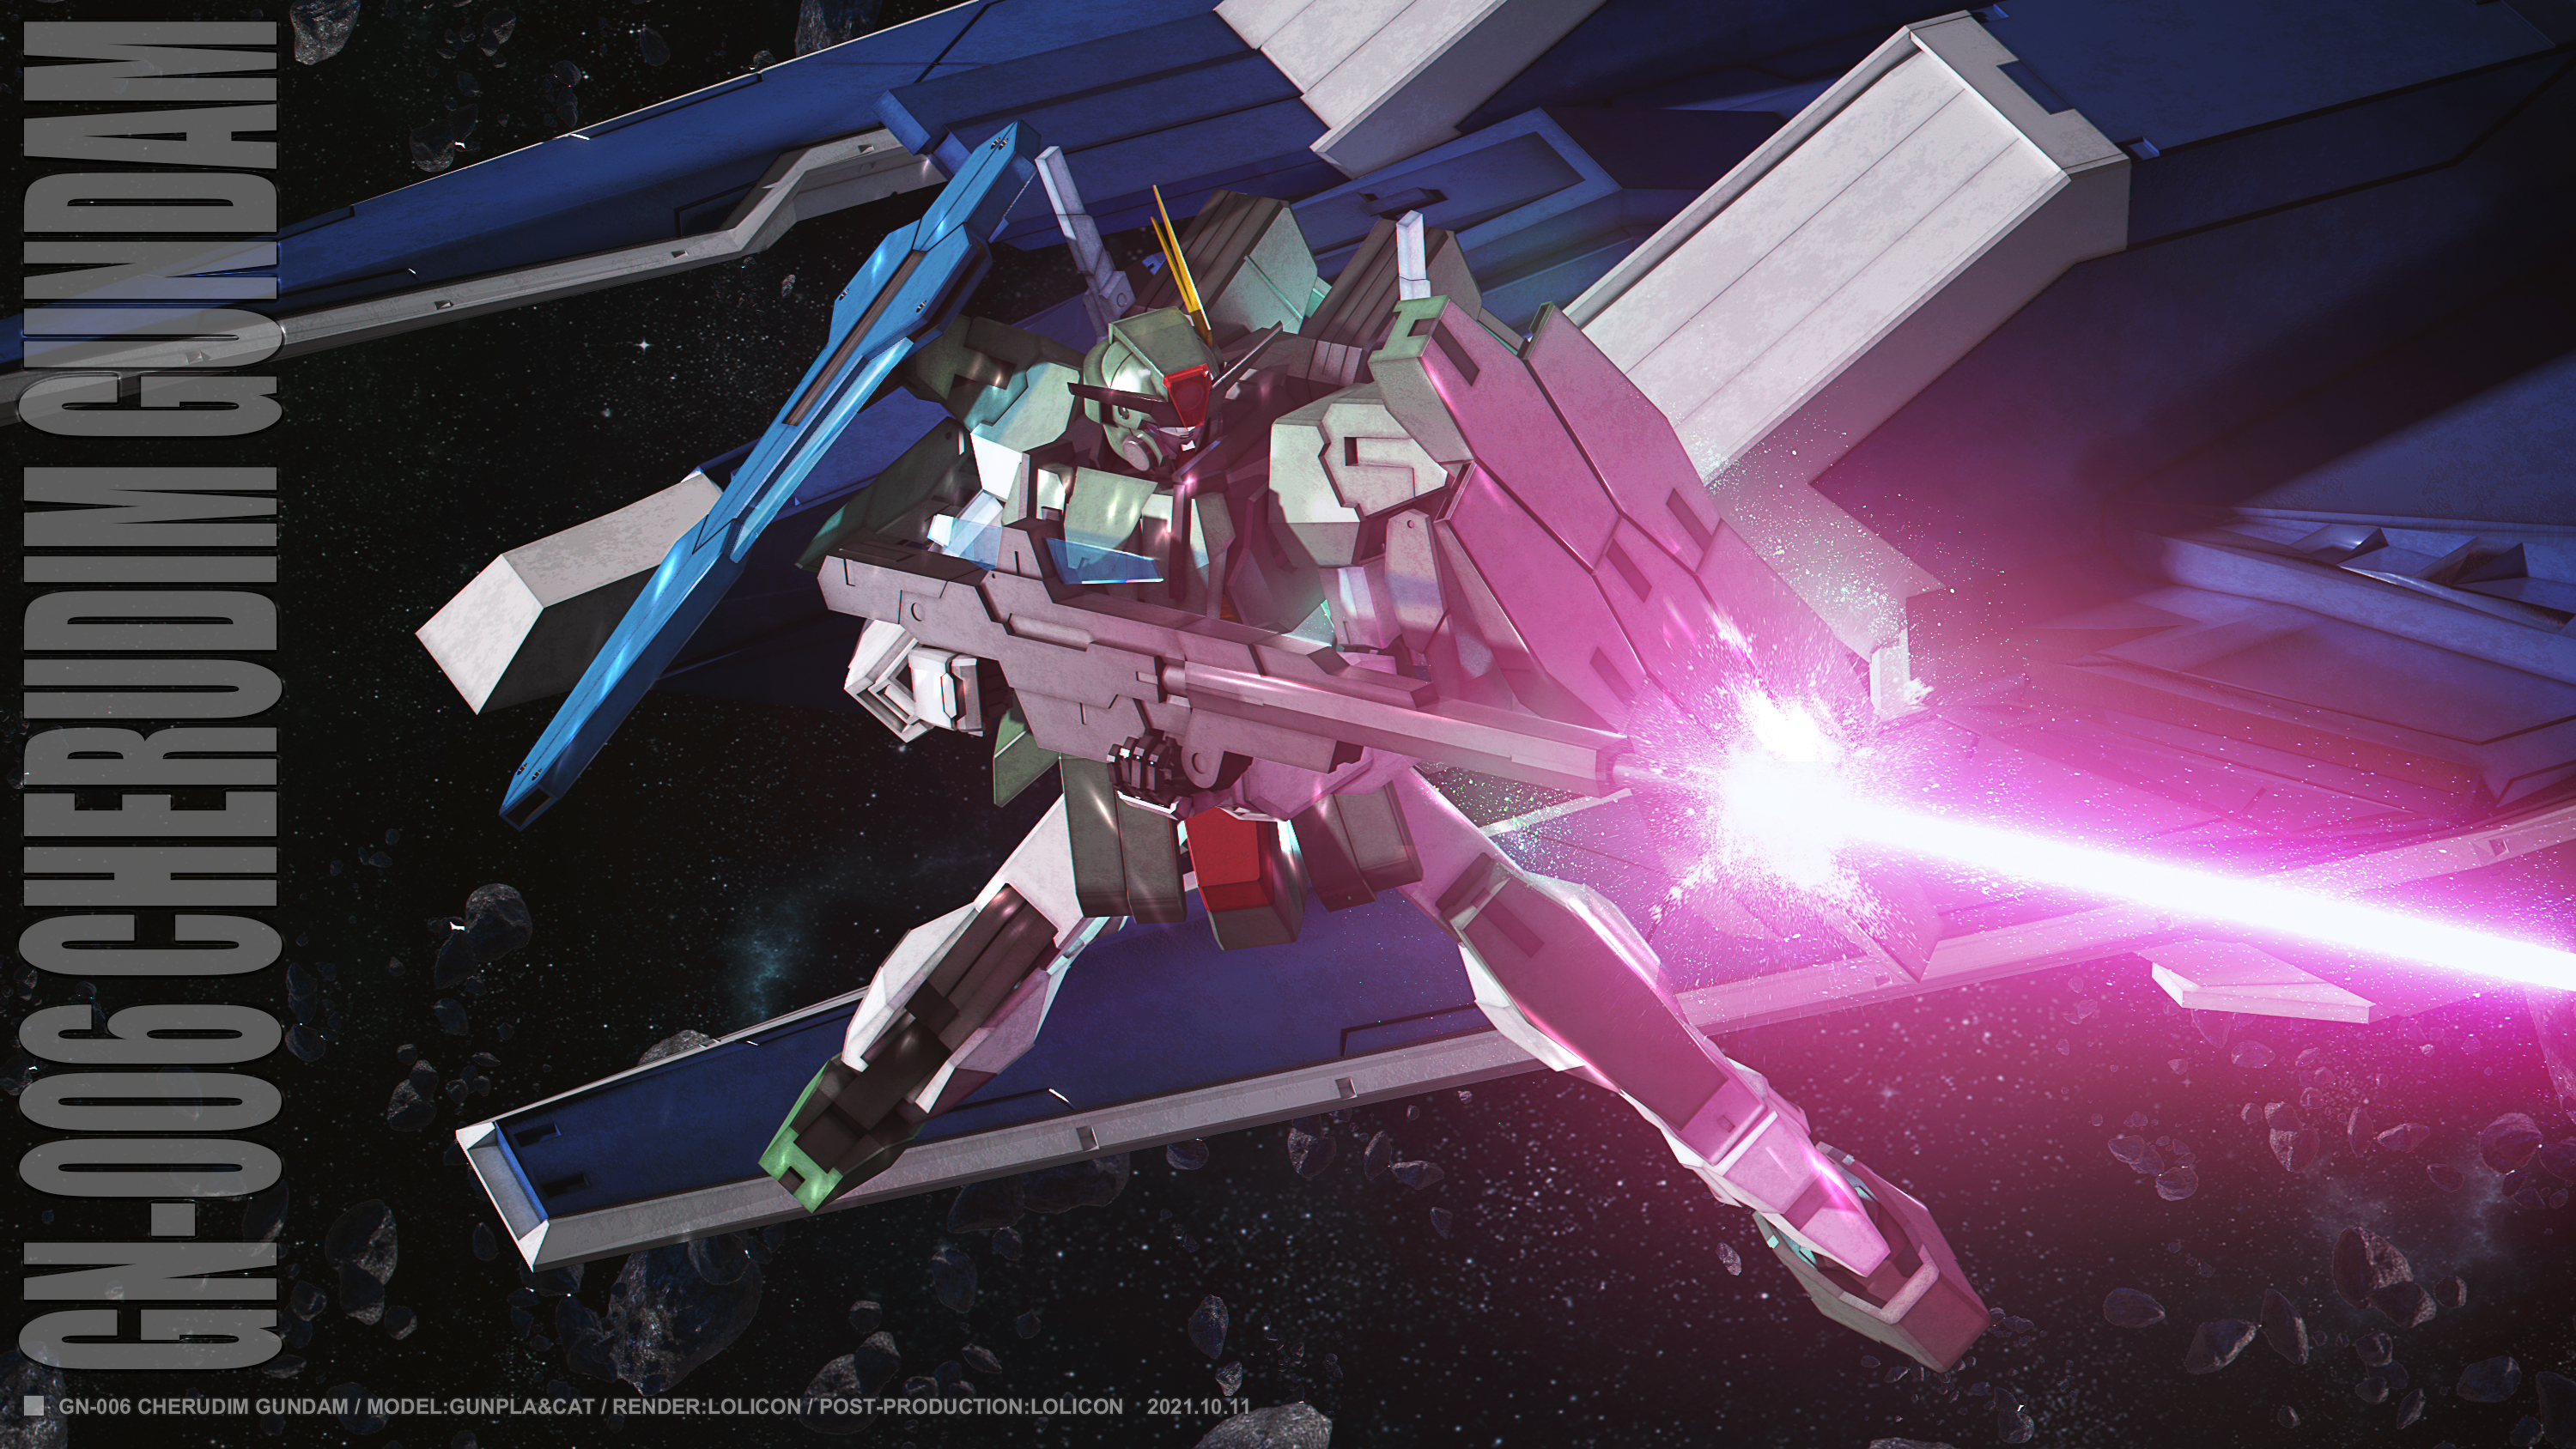 Cherudim Gundam Anime Mechs Gundam Mobile Suit Gundam 00 Super Robot Taisen Artwork Digital Art Fan  3000x1688